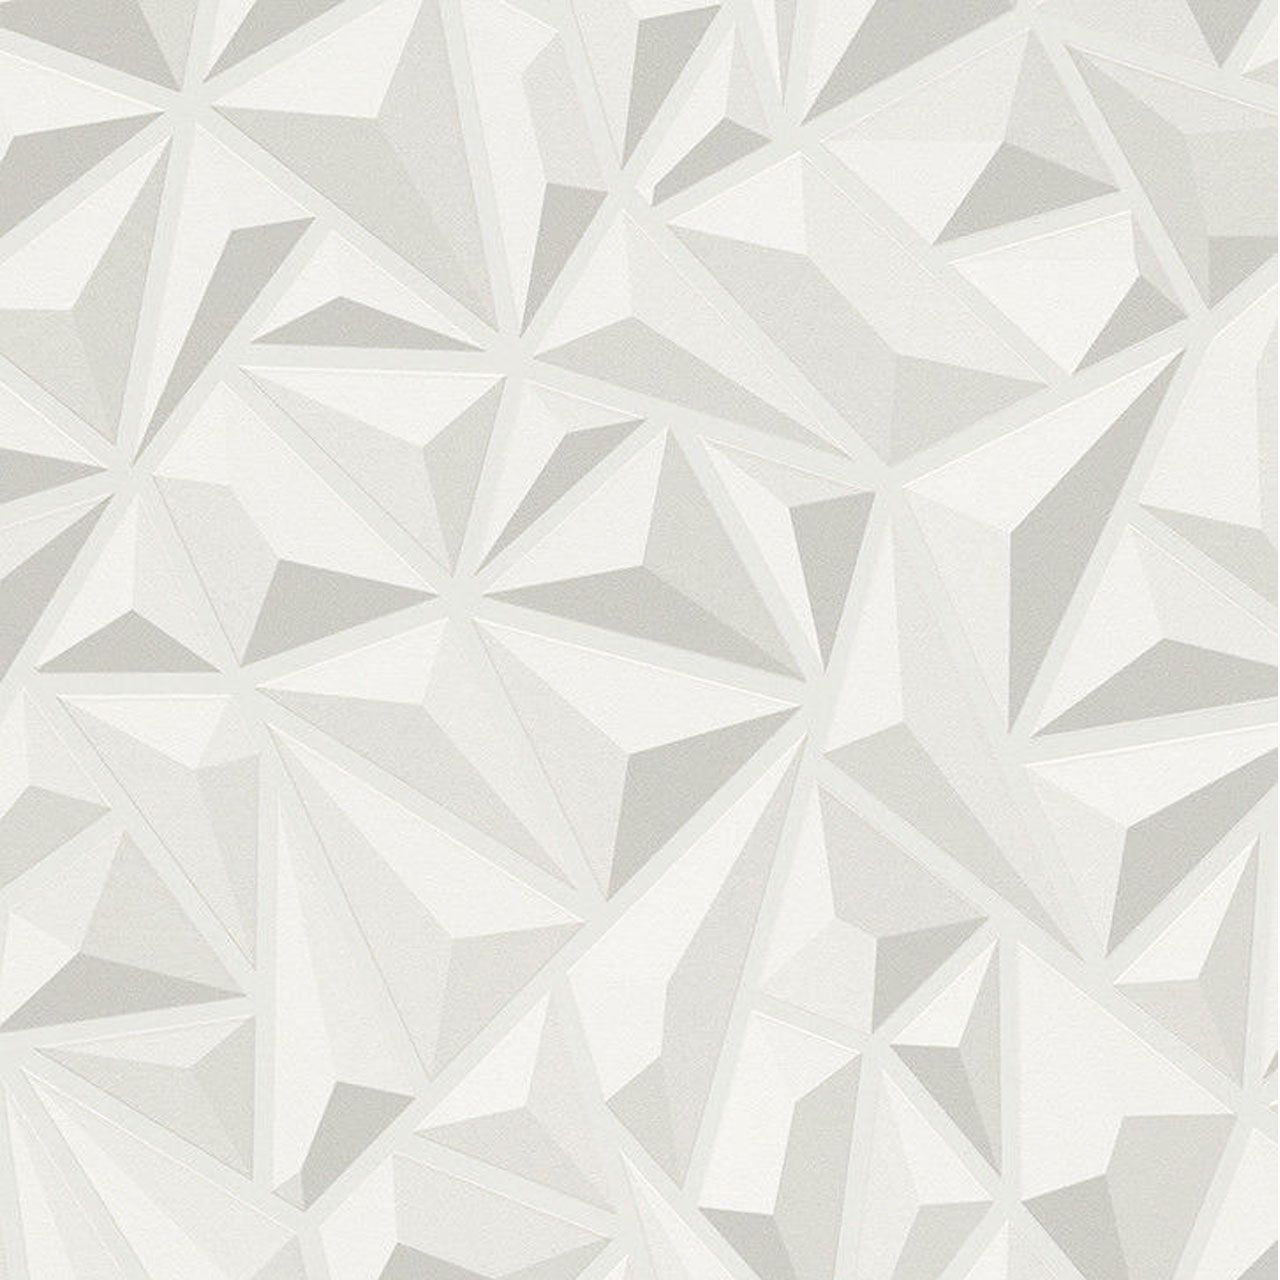 عکس استوک طرح سه بعدی اشکال هندسی و چندضلعی سفید 